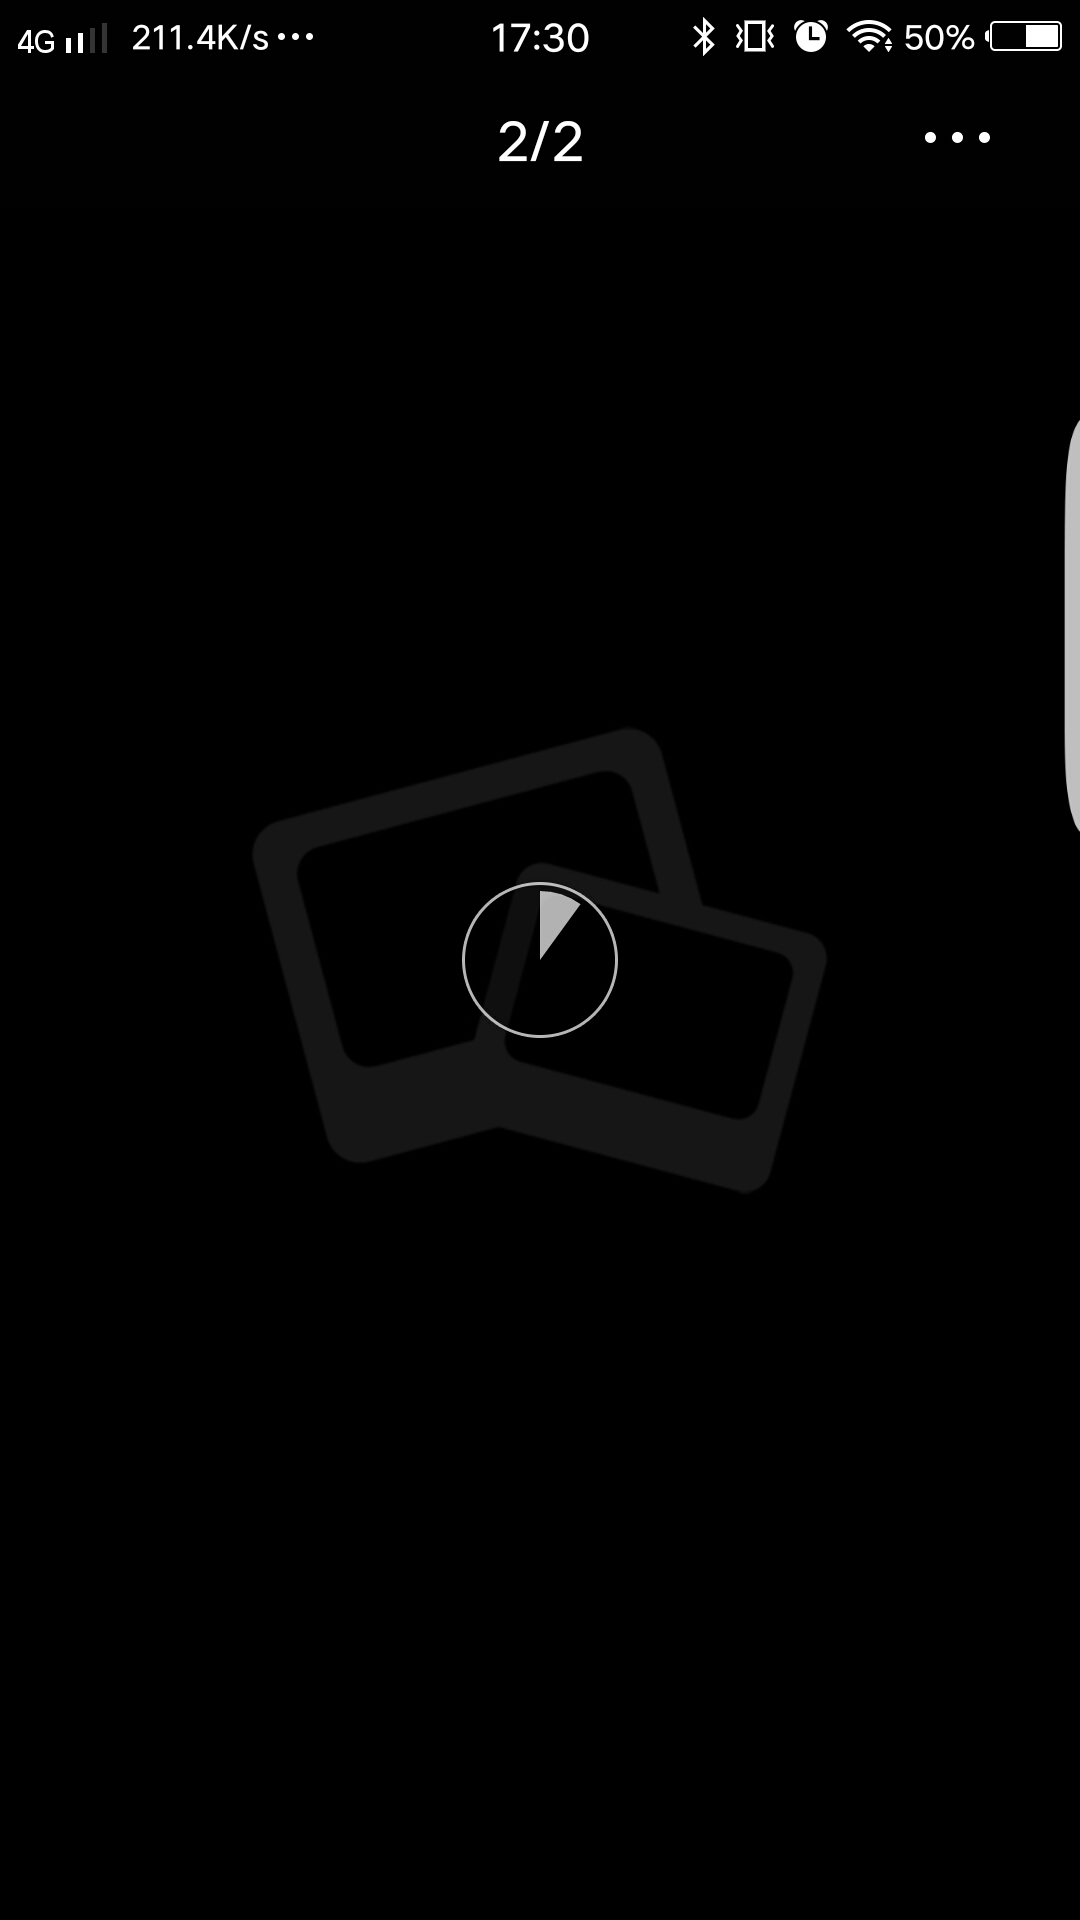 xplay6新浪微博私信图片点原图不显示 无法保存图片 怎么办?